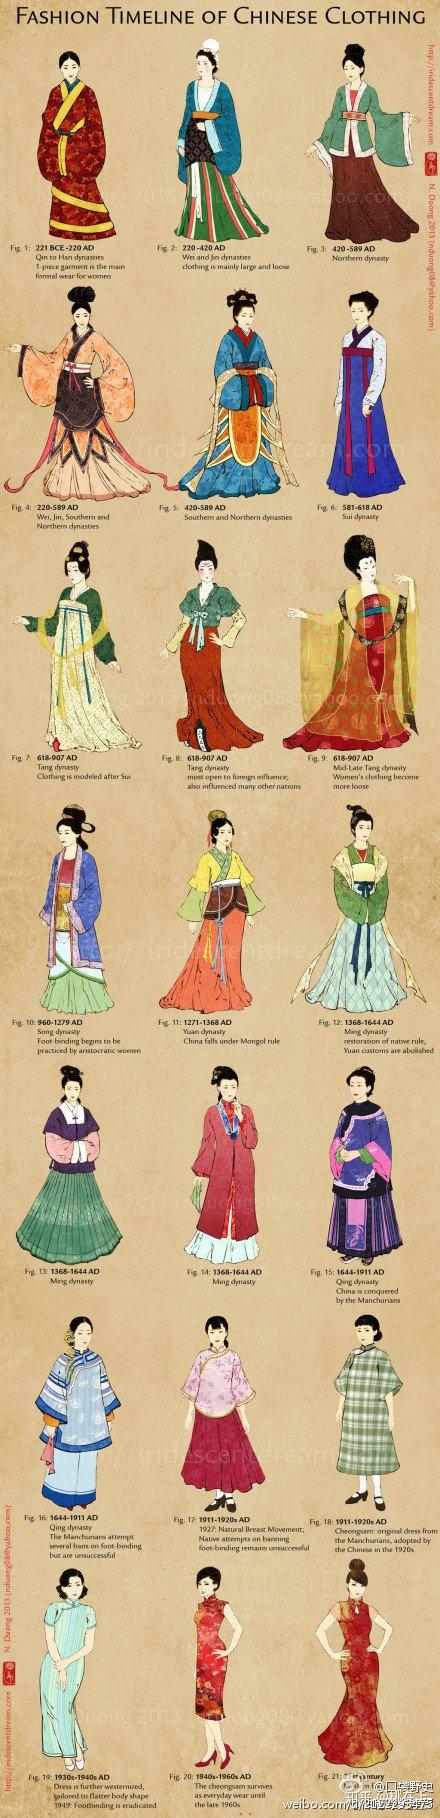 真正的汉民族传统服装到底是什么? 